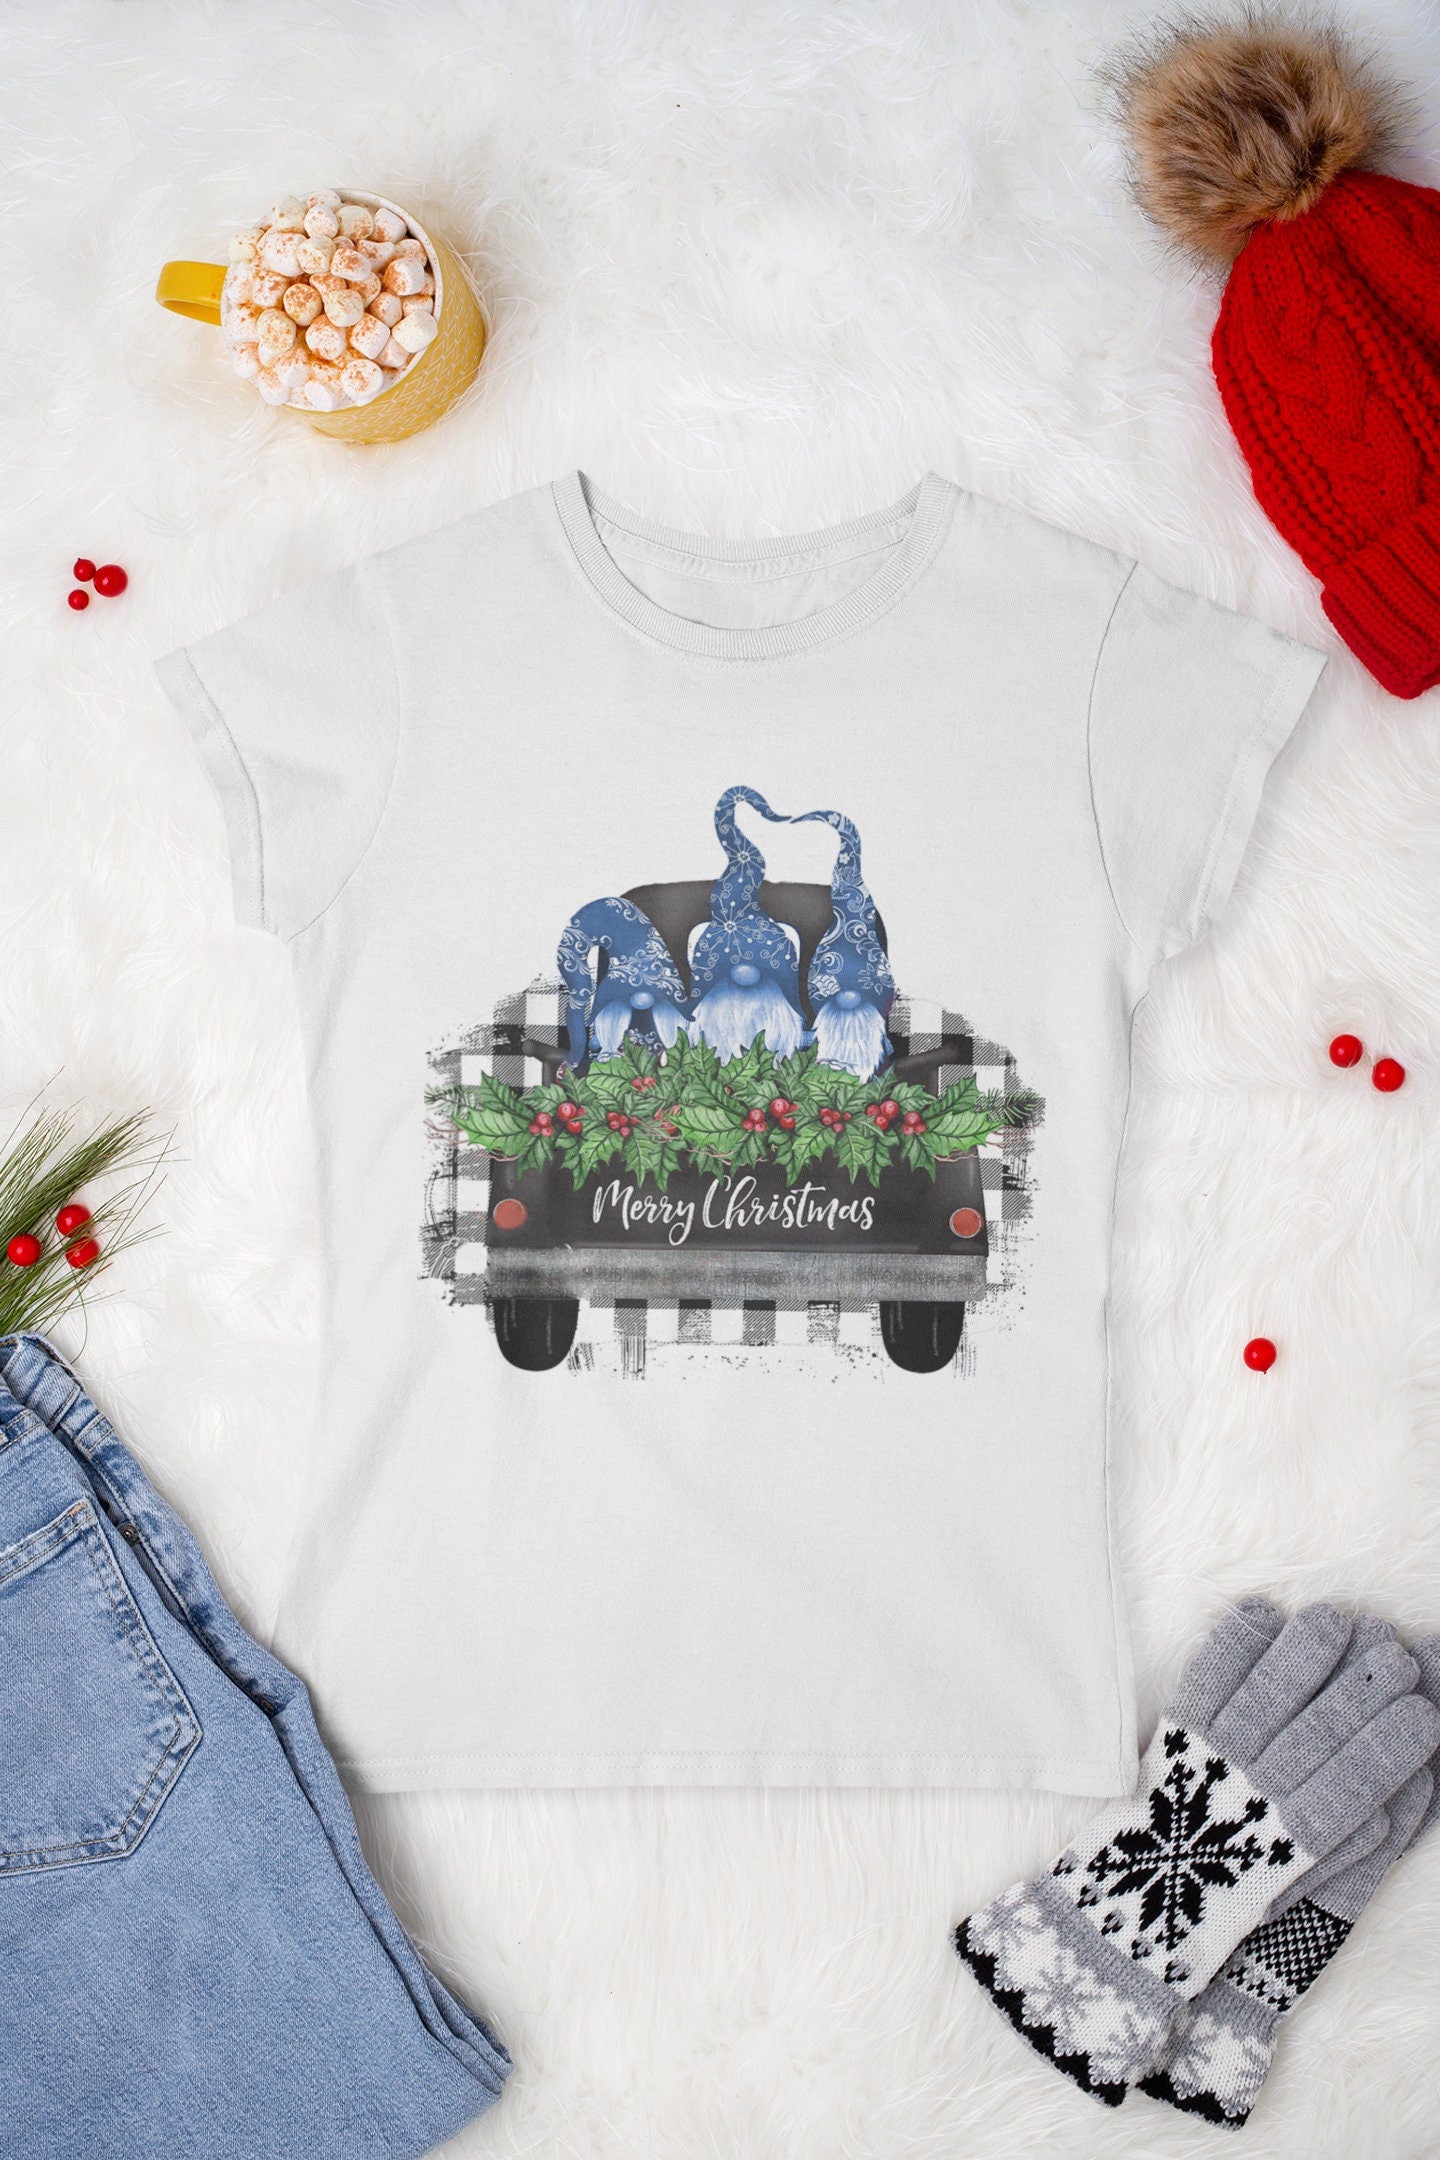 Merry Christmas Gnomes Tee, Holiday Tee, Christmas Shirt, Gnomes Holiday Tee, Winter Tee, Holiday Time Shirt,  Christmas Cheer Shirt